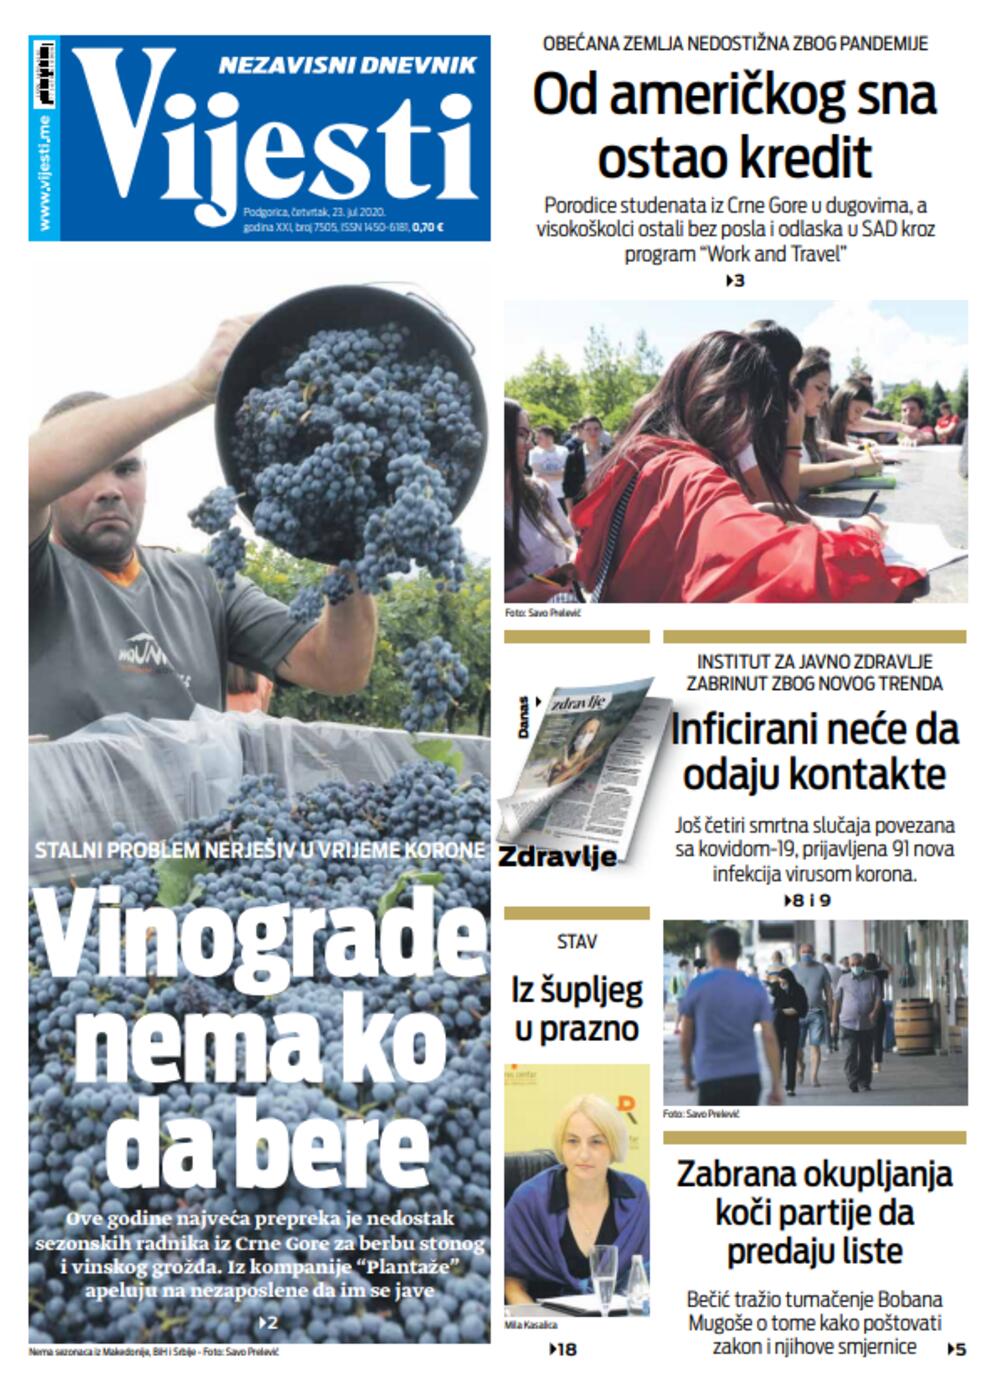 Naslovna strana "Vijesti" za 23. jul, Foto: Vijesti